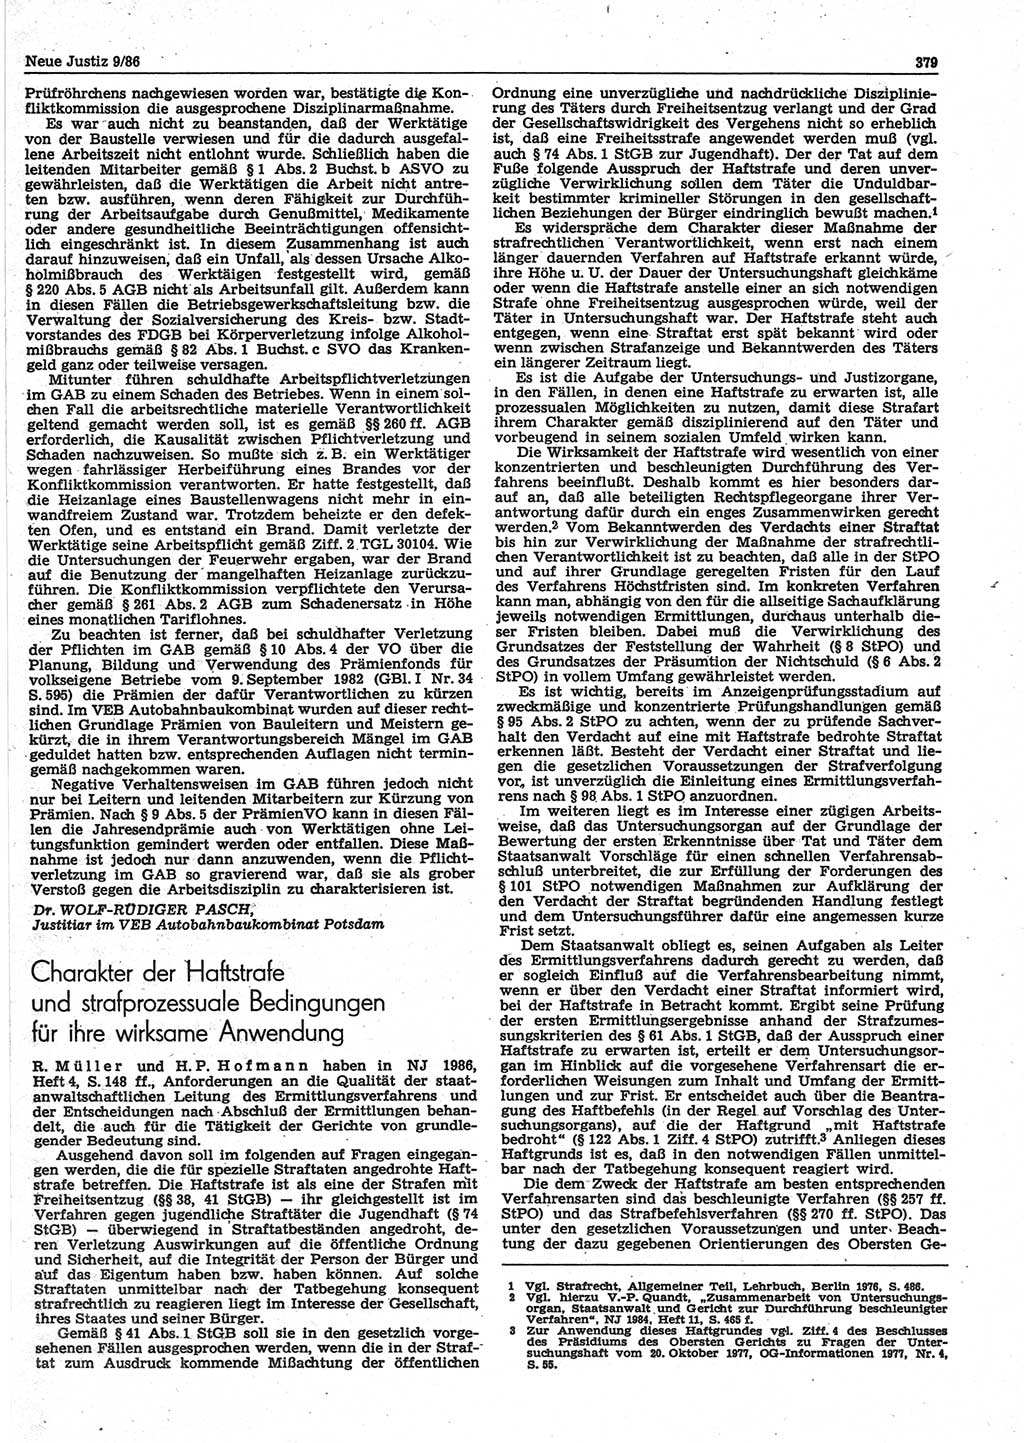 Neue Justiz (NJ), Zeitschrift für sozialistisches Recht und Gesetzlichkeit [Deutsche Demokratische Republik (DDR)], 40. Jahrgang 1986, Seite 379 (NJ DDR 1986, S. 379)